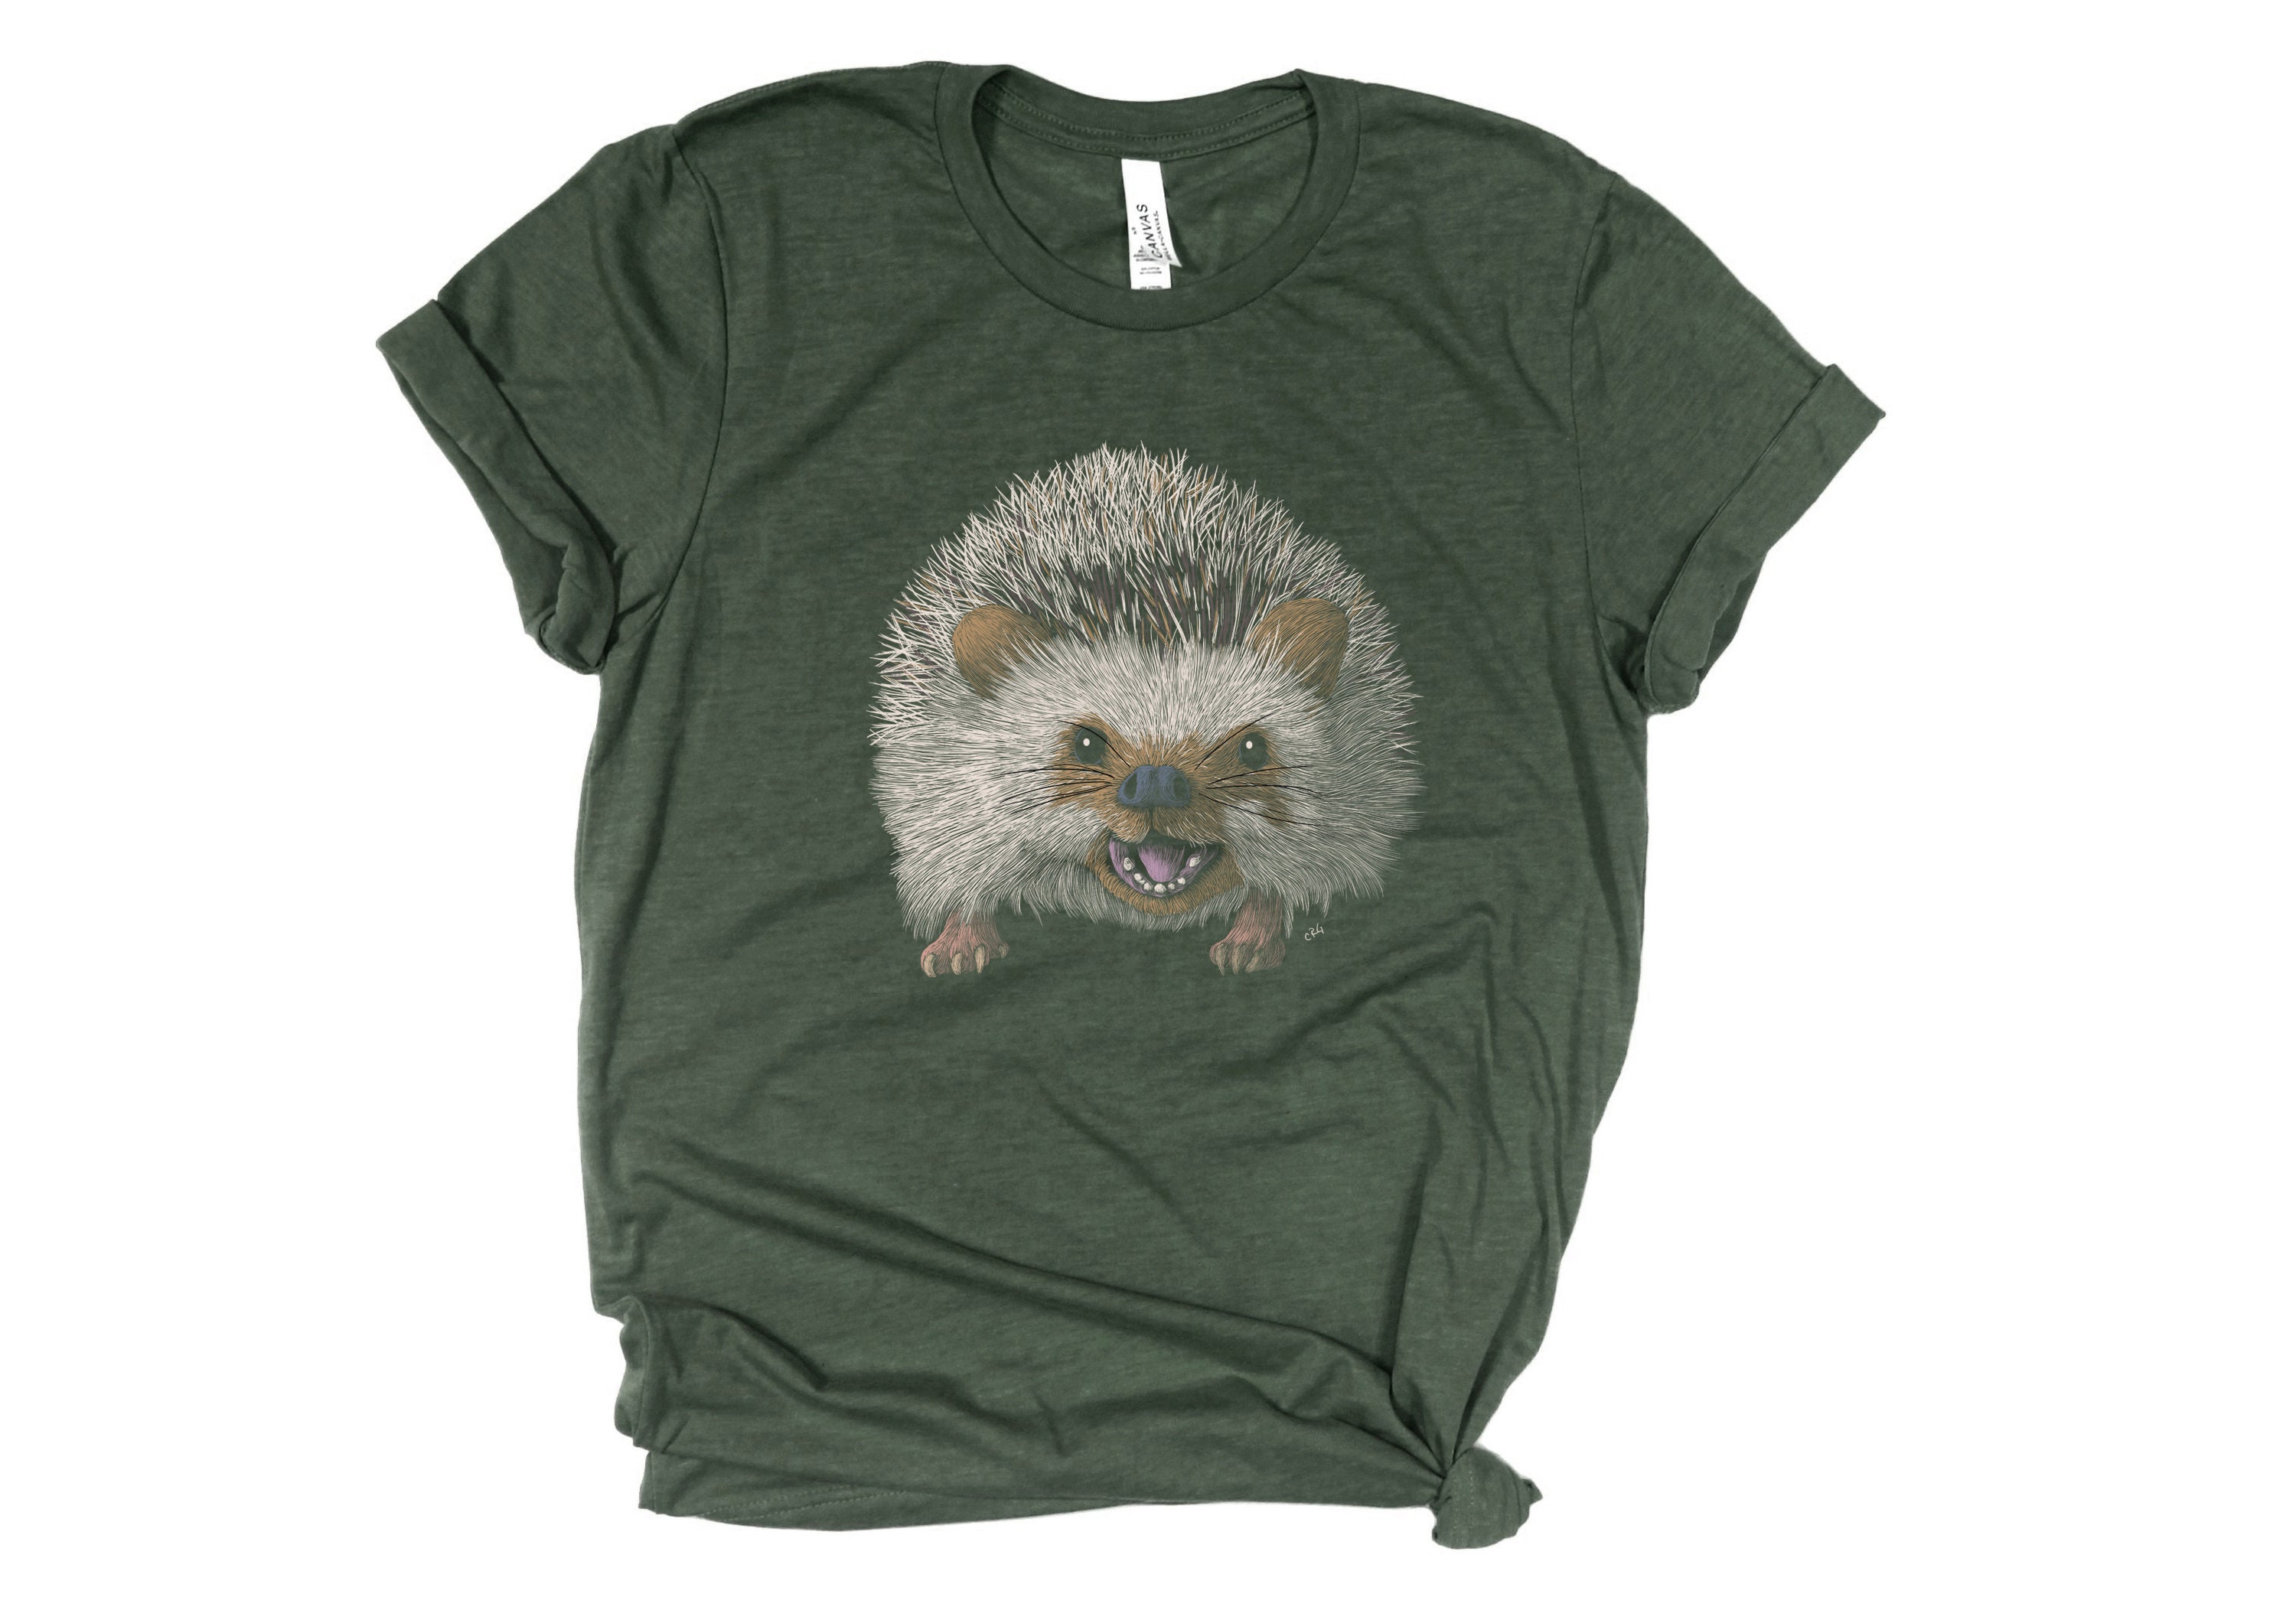 Hedgehog Shirt / Hedgehog Gifts / Hedgehog Gift / Hedgehog | Etsy